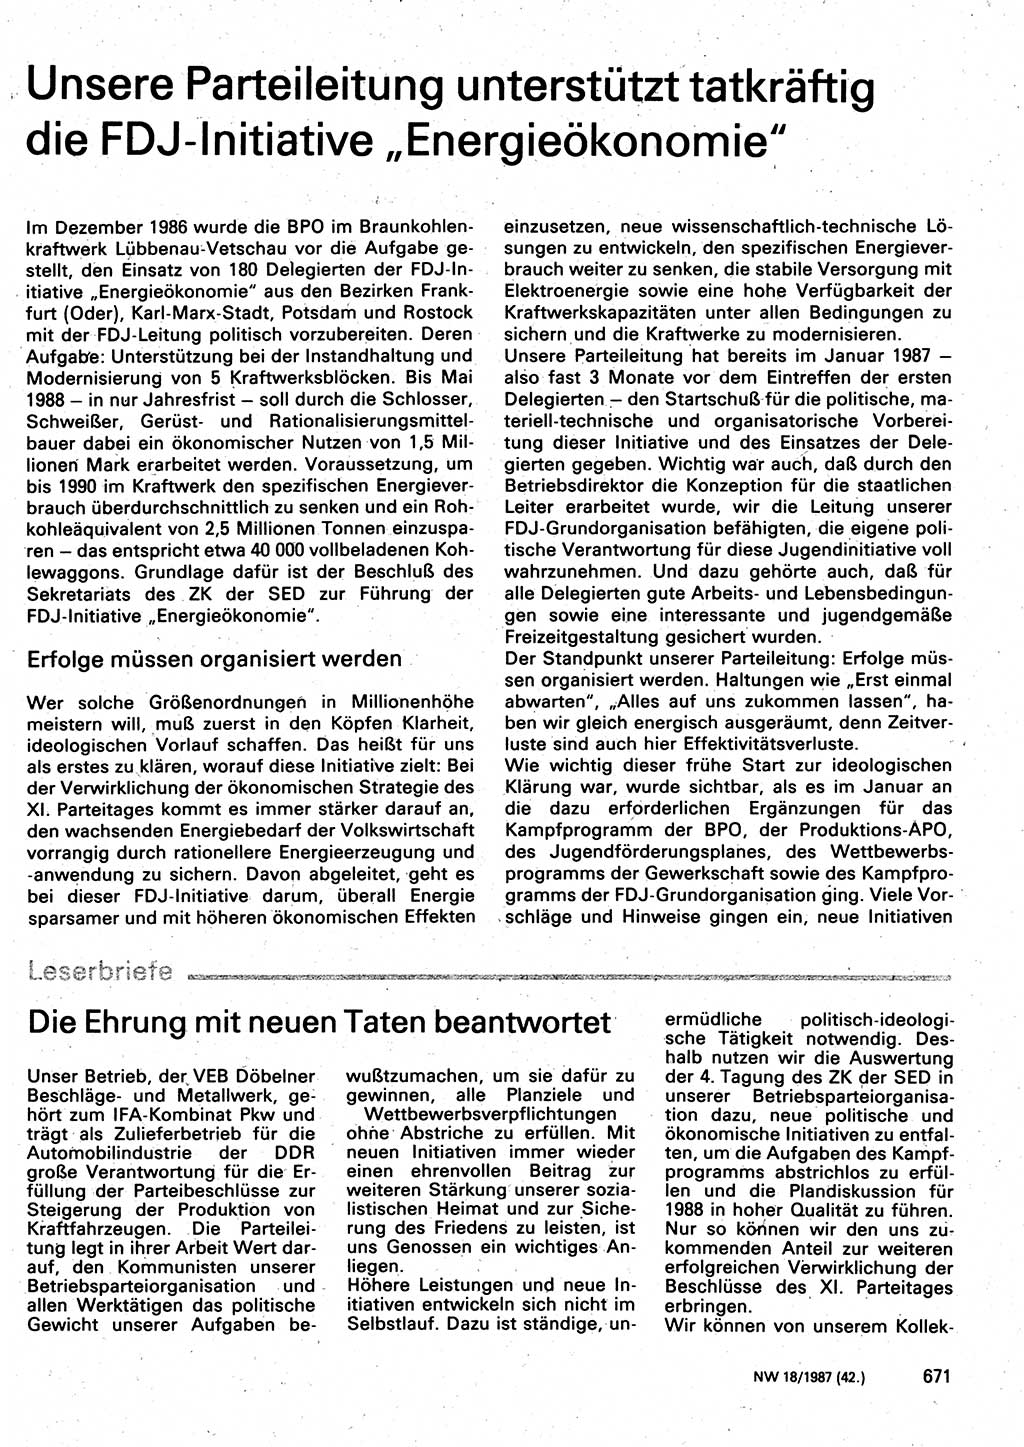 Neuer Weg (NW), Organ des Zentralkomitees (ZK) der SED (Sozialistische Einheitspartei Deutschlands) für Fragen des Parteilebens, 42. Jahrgang [Deutsche Demokratische Republik (DDR)] 1987, Seite 671 (NW ZK SED DDR 1987, S. 671)